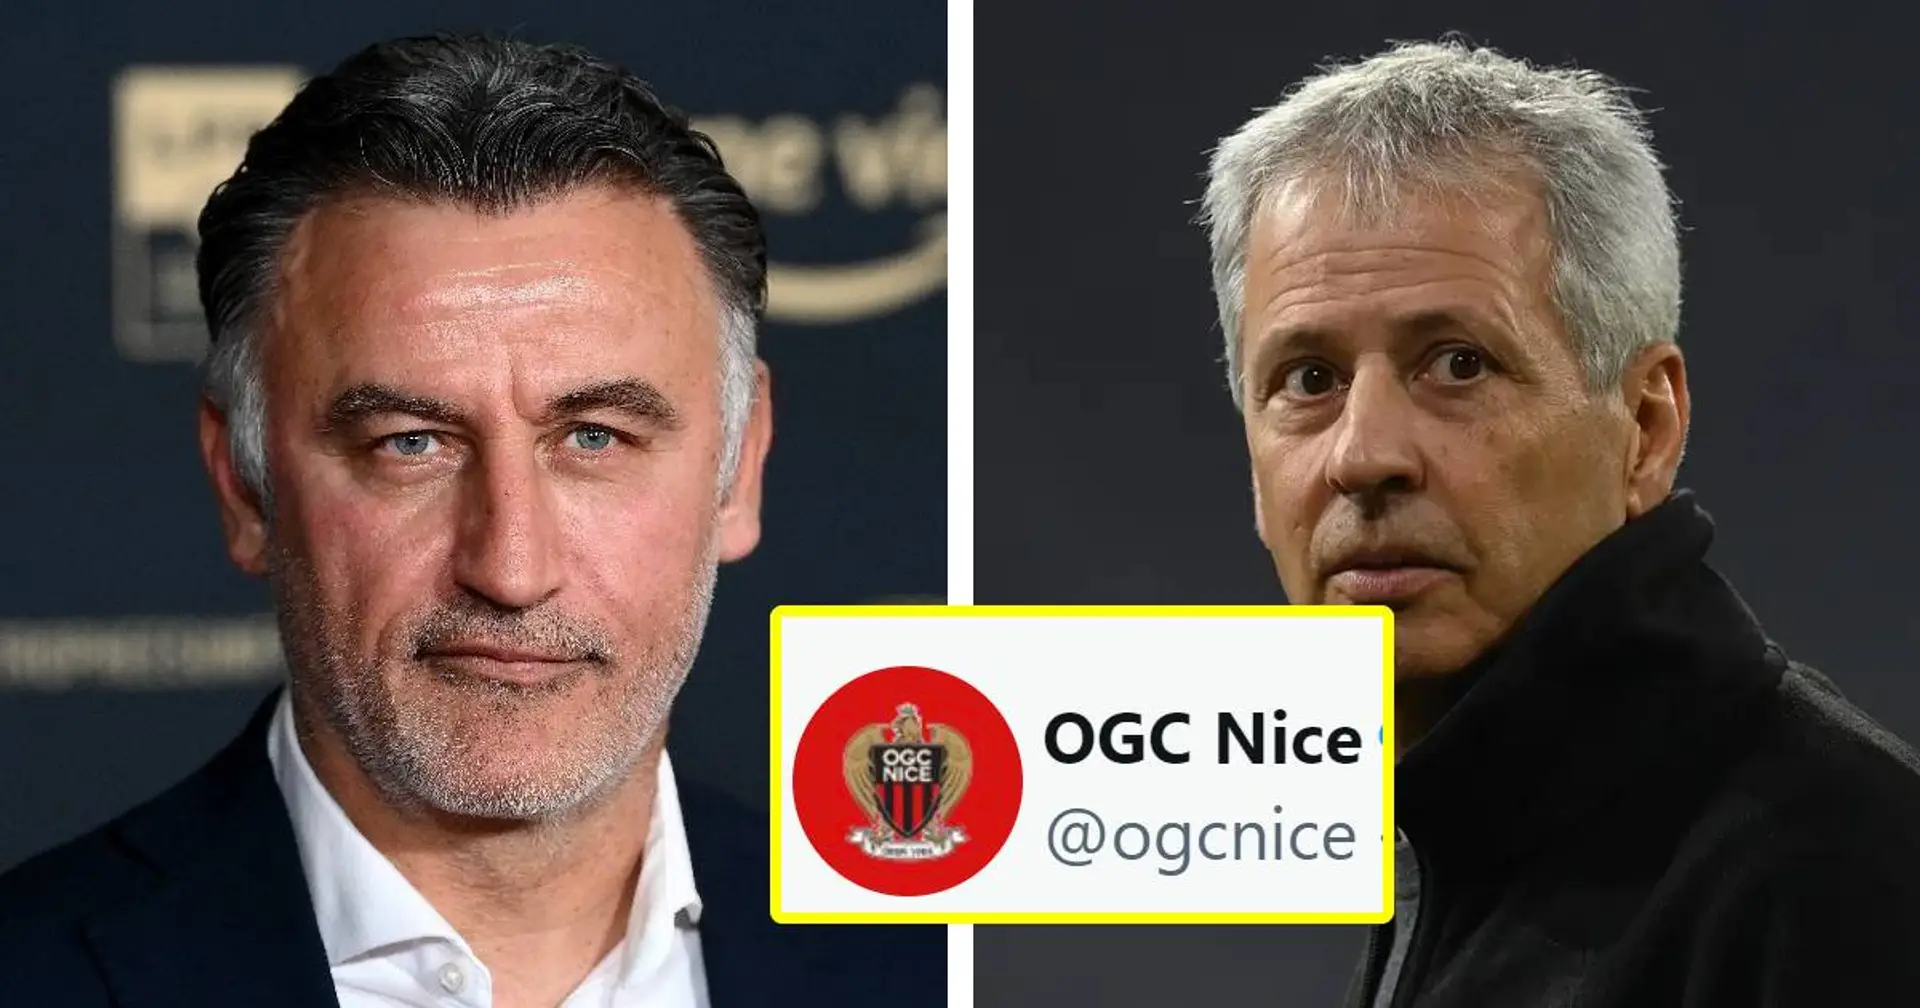 L'OGC Nice annonce le départ de Christophe Galtier et l'arrivée de Favre